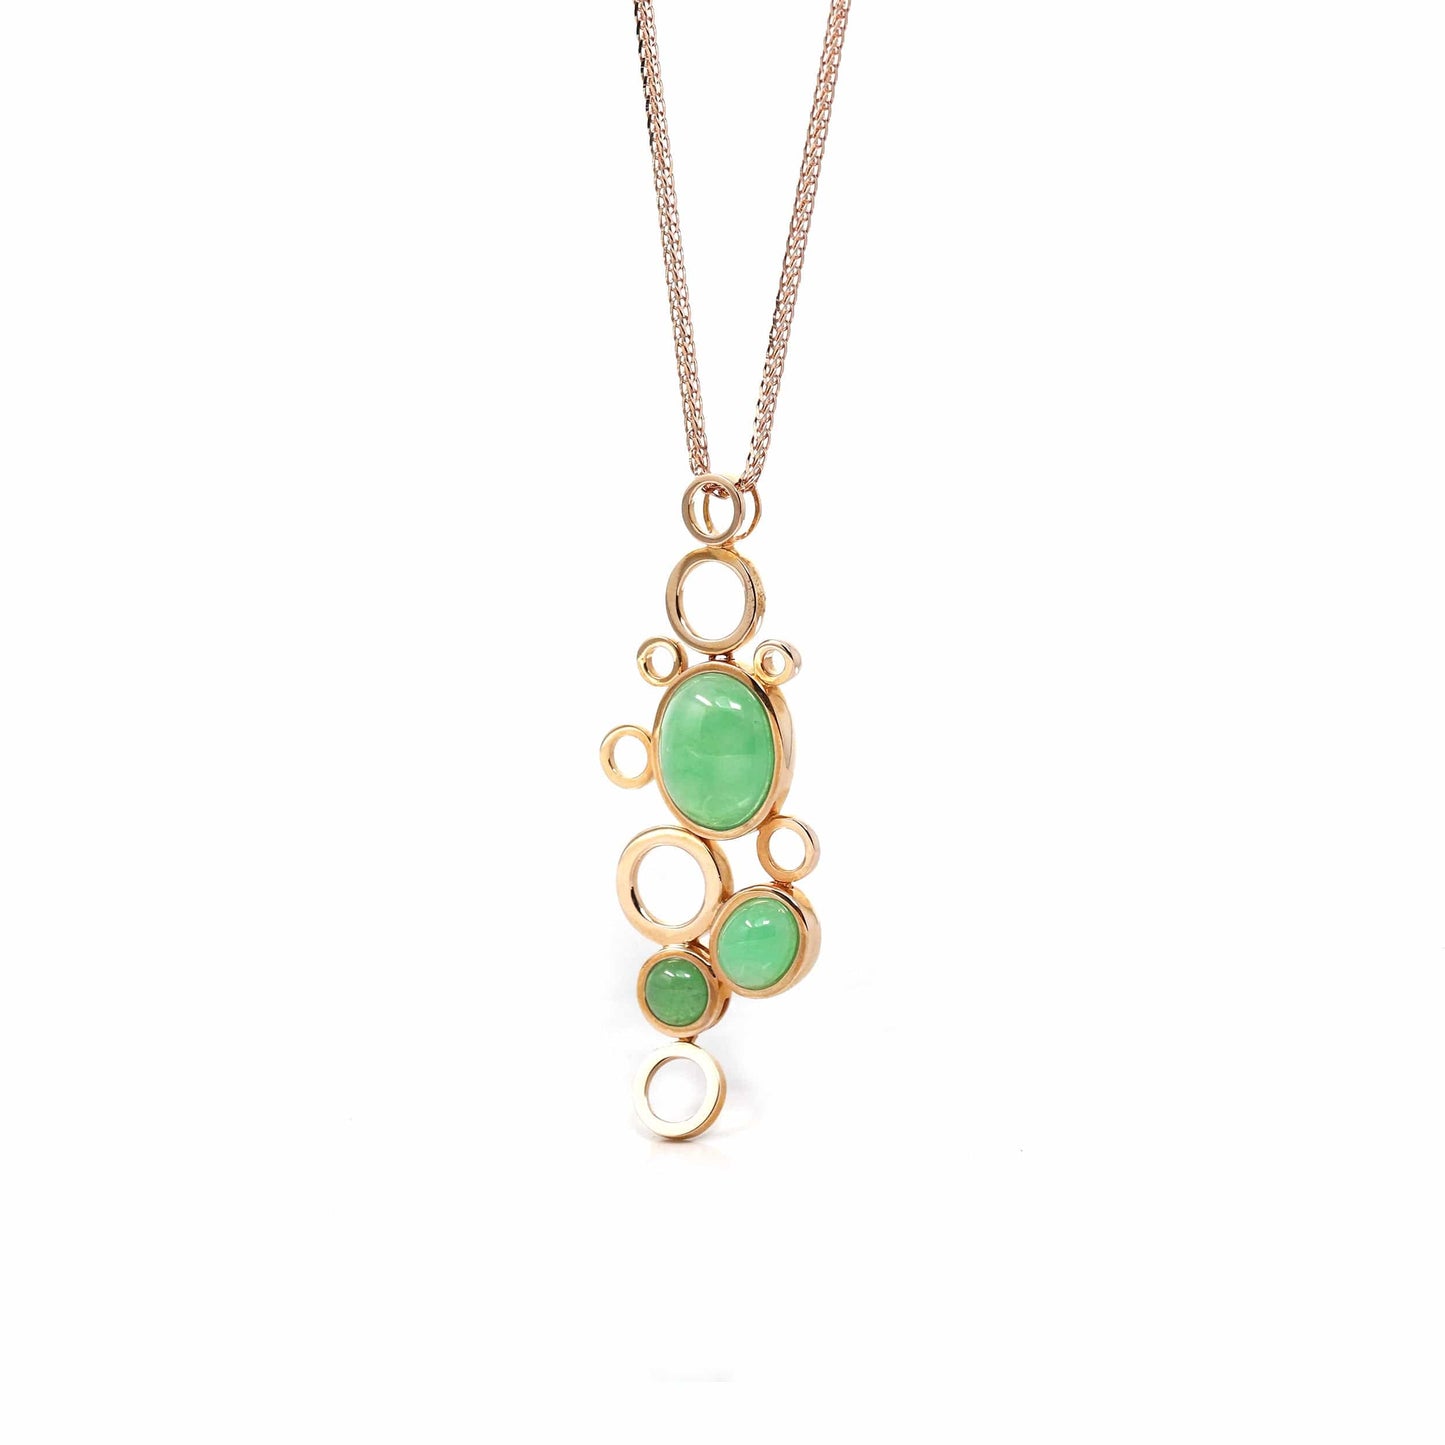 RealJade® Co. Gold Jadeite Necklace Copy of 18k Rose Gold Jadeite Jade Diamond Bubble Pendant Necklace